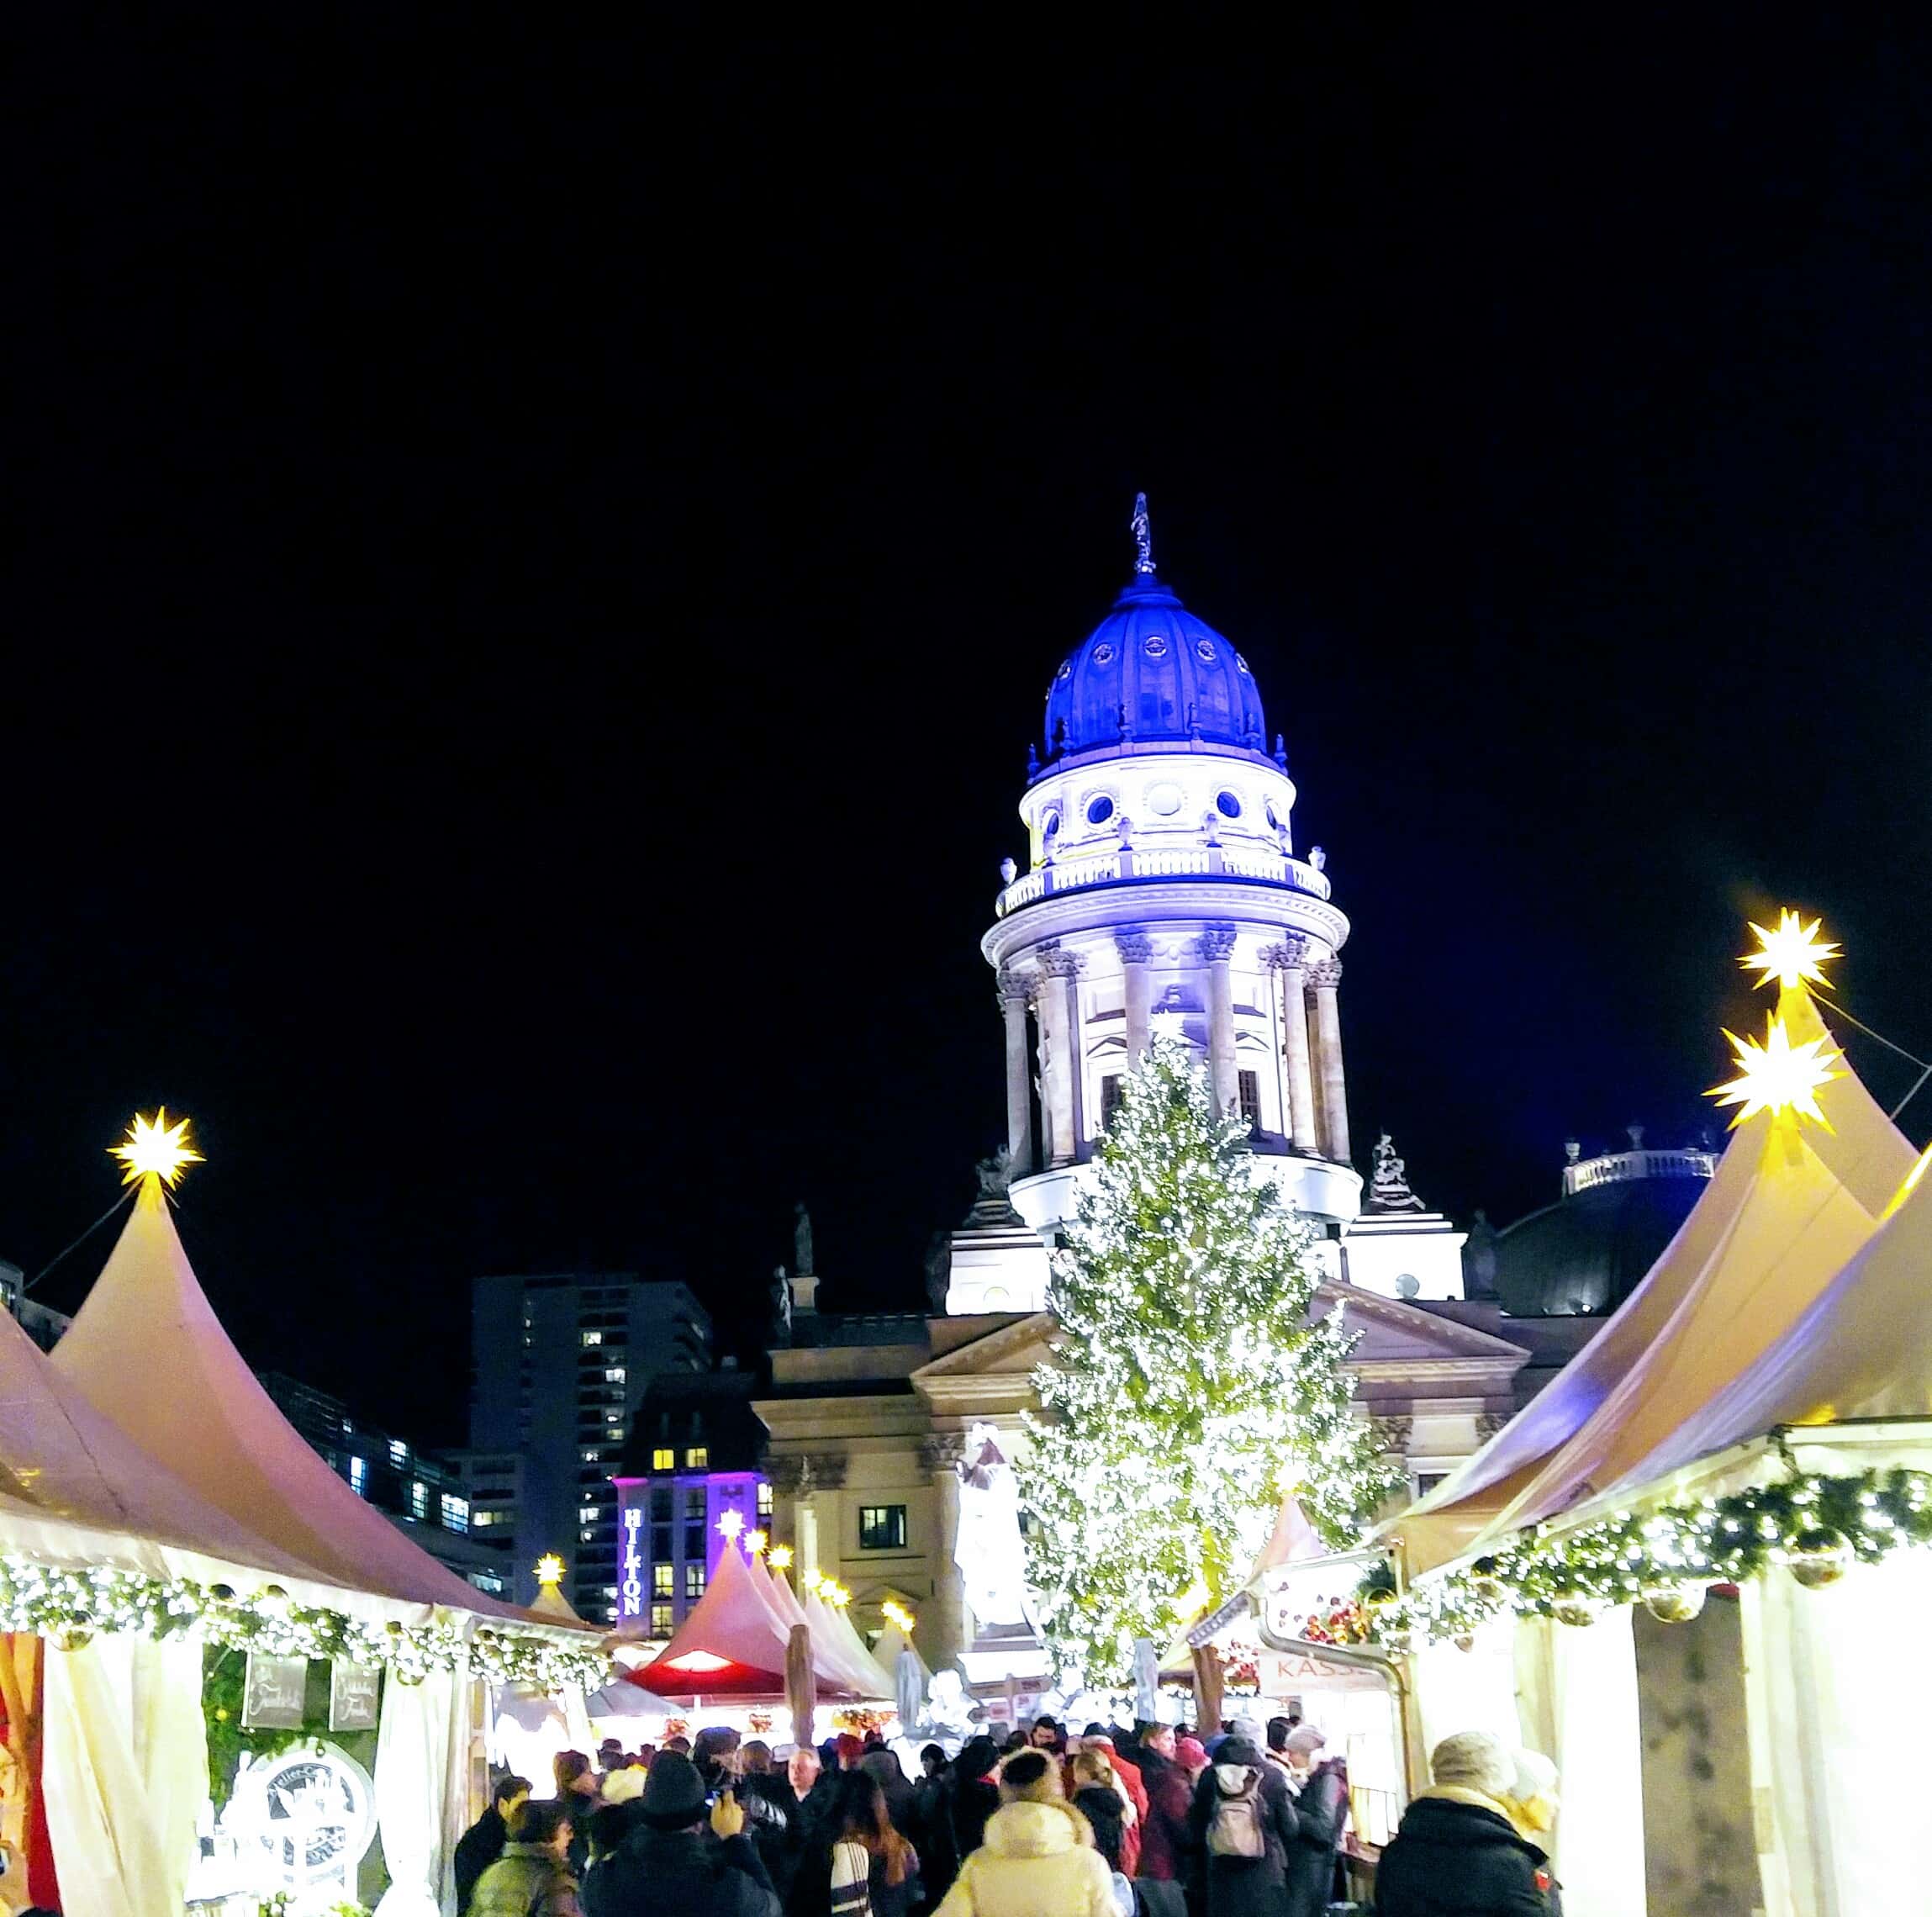 Christmas stalls and lights German Christmas Market